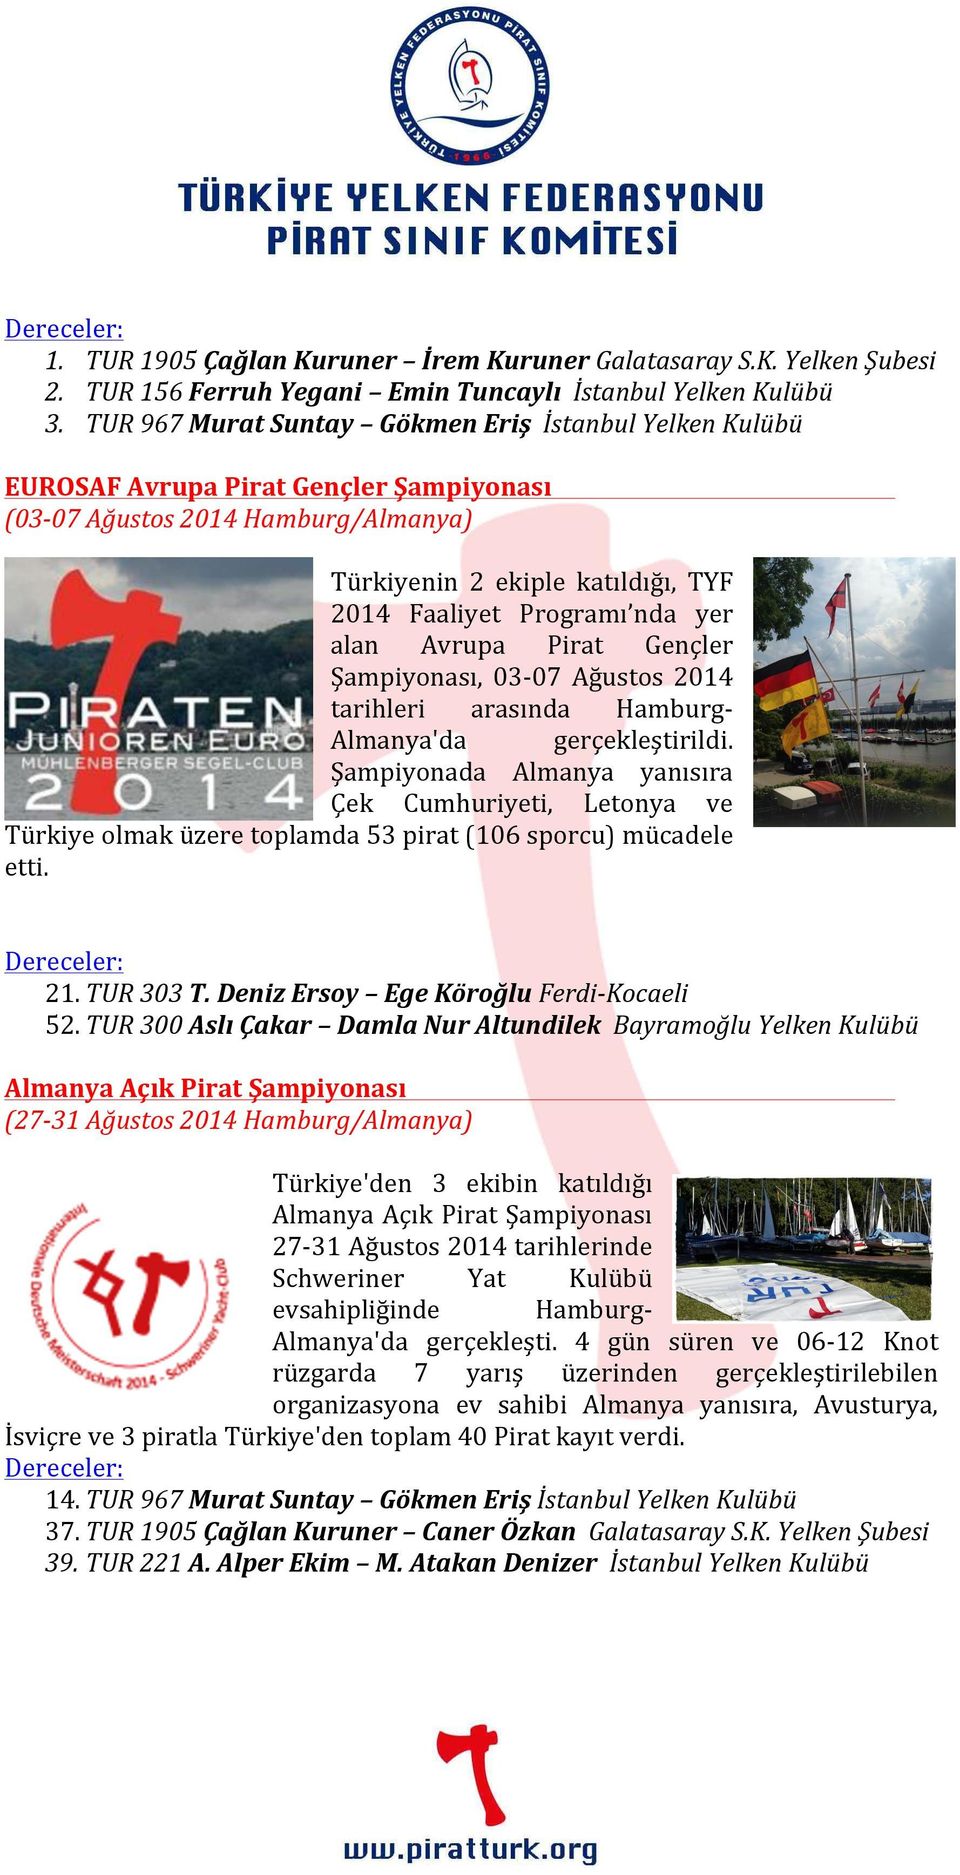 alan Avrupa Pirat Gençler Şampiyonası, 03-07 Ağustos 2014 tarihleri arasında Hamburg- Almanya'da gerçekleştirildi.